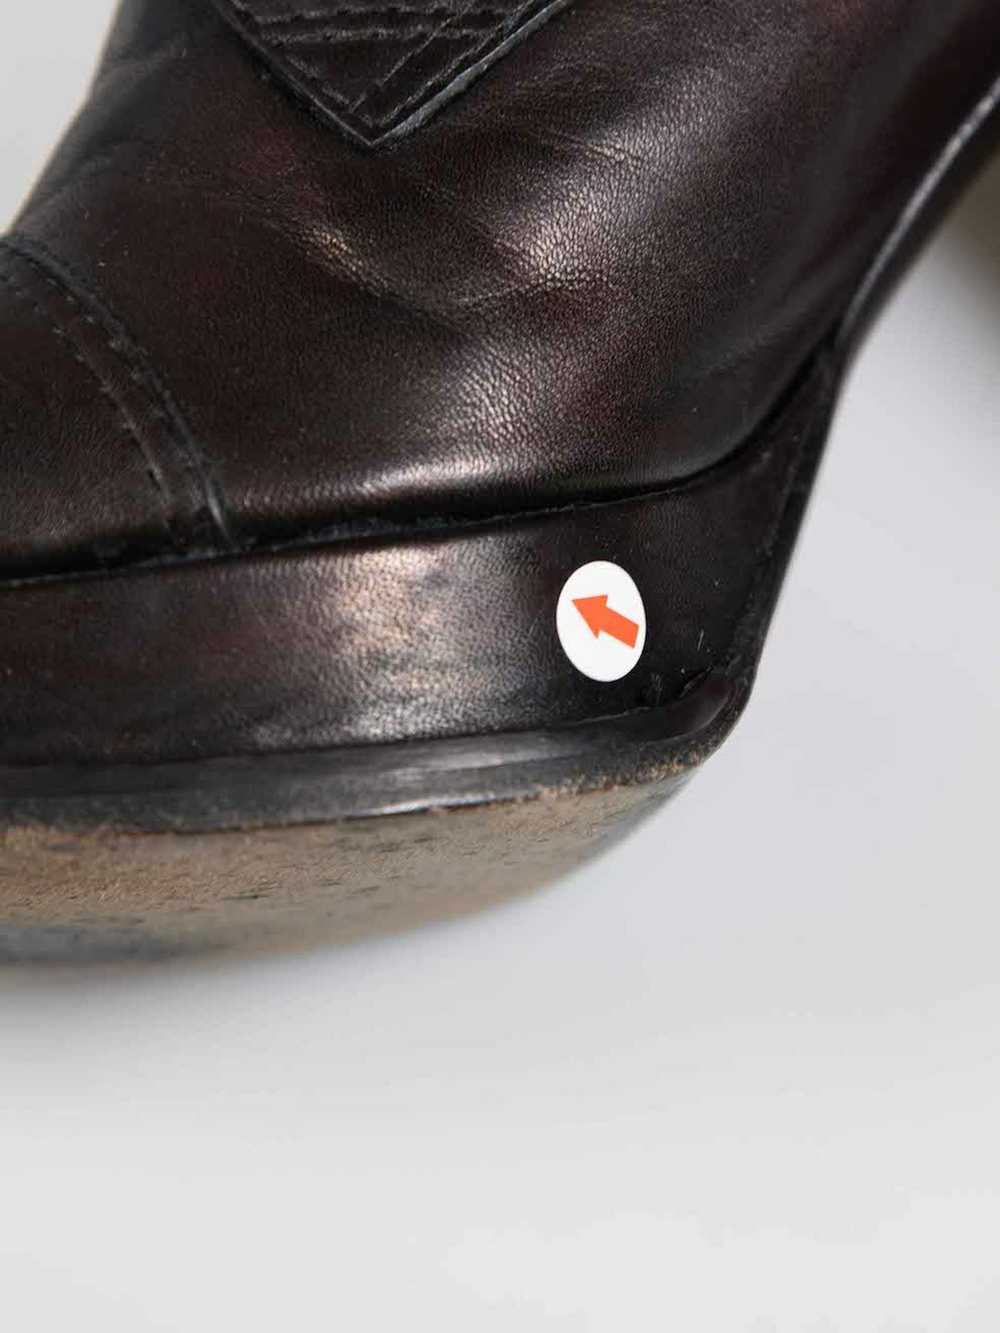 Yohji Yamamoto Black Leather Laced Platform Boots - image 7